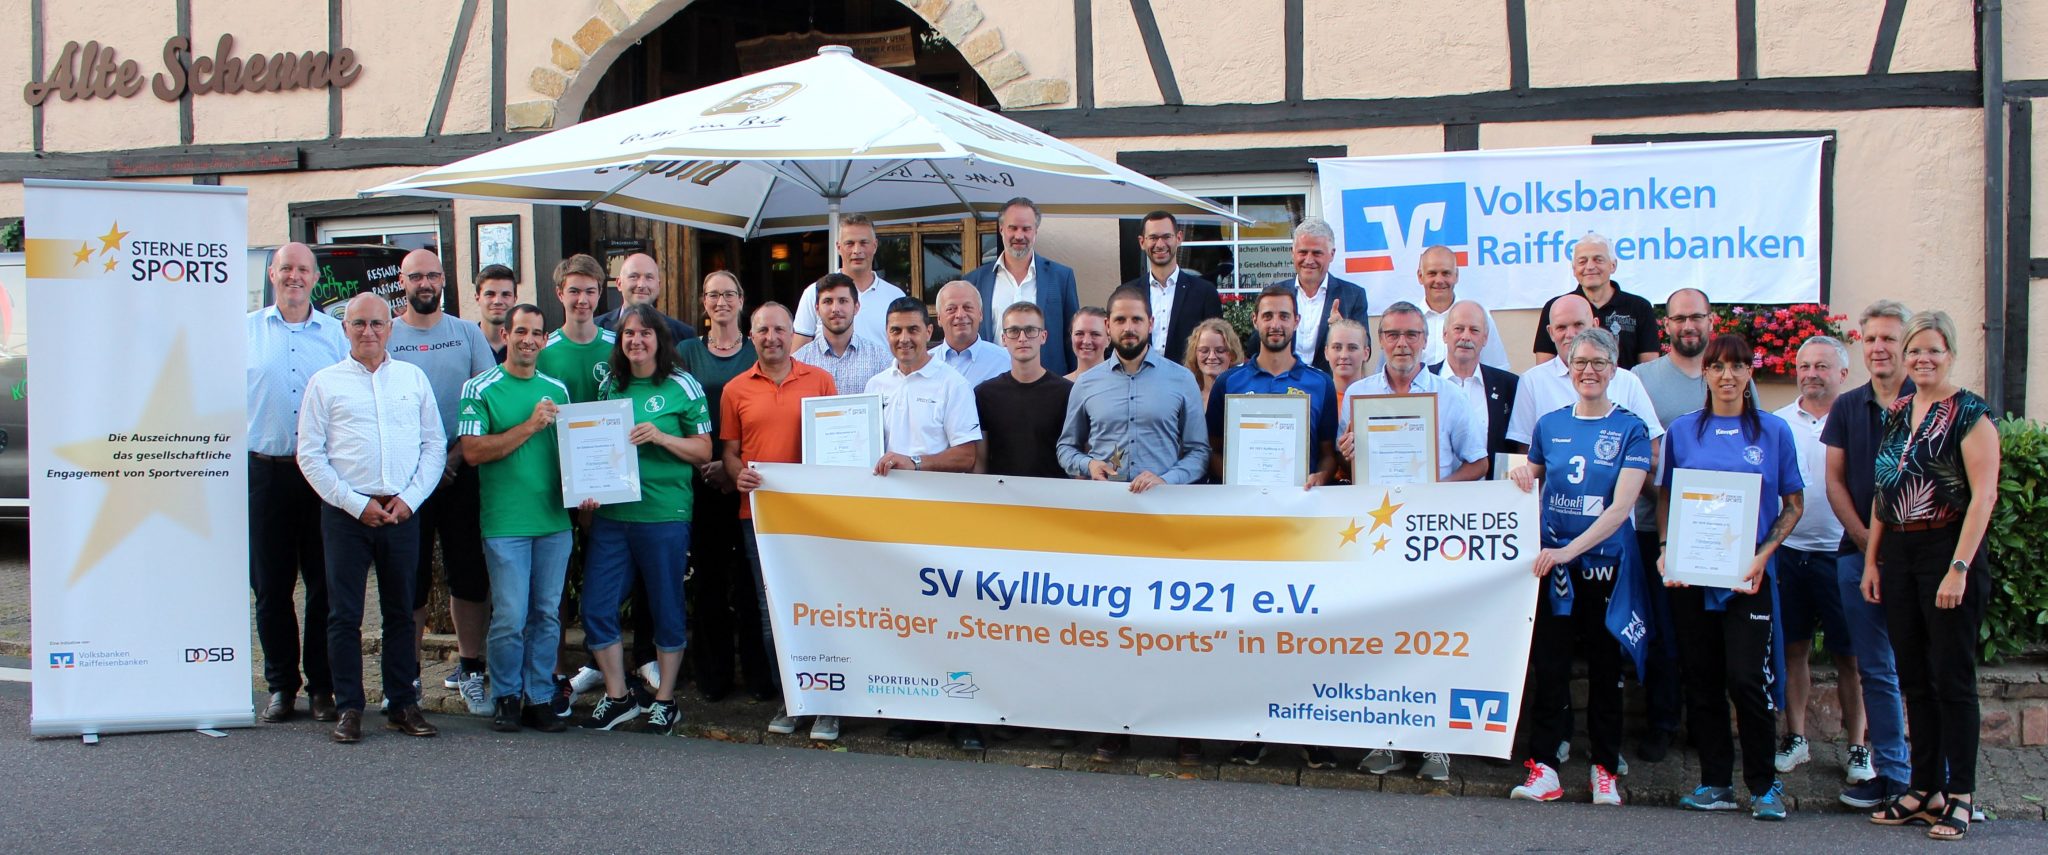 SVK gewinnt Großen Stern des Sports 2022 in Bronze